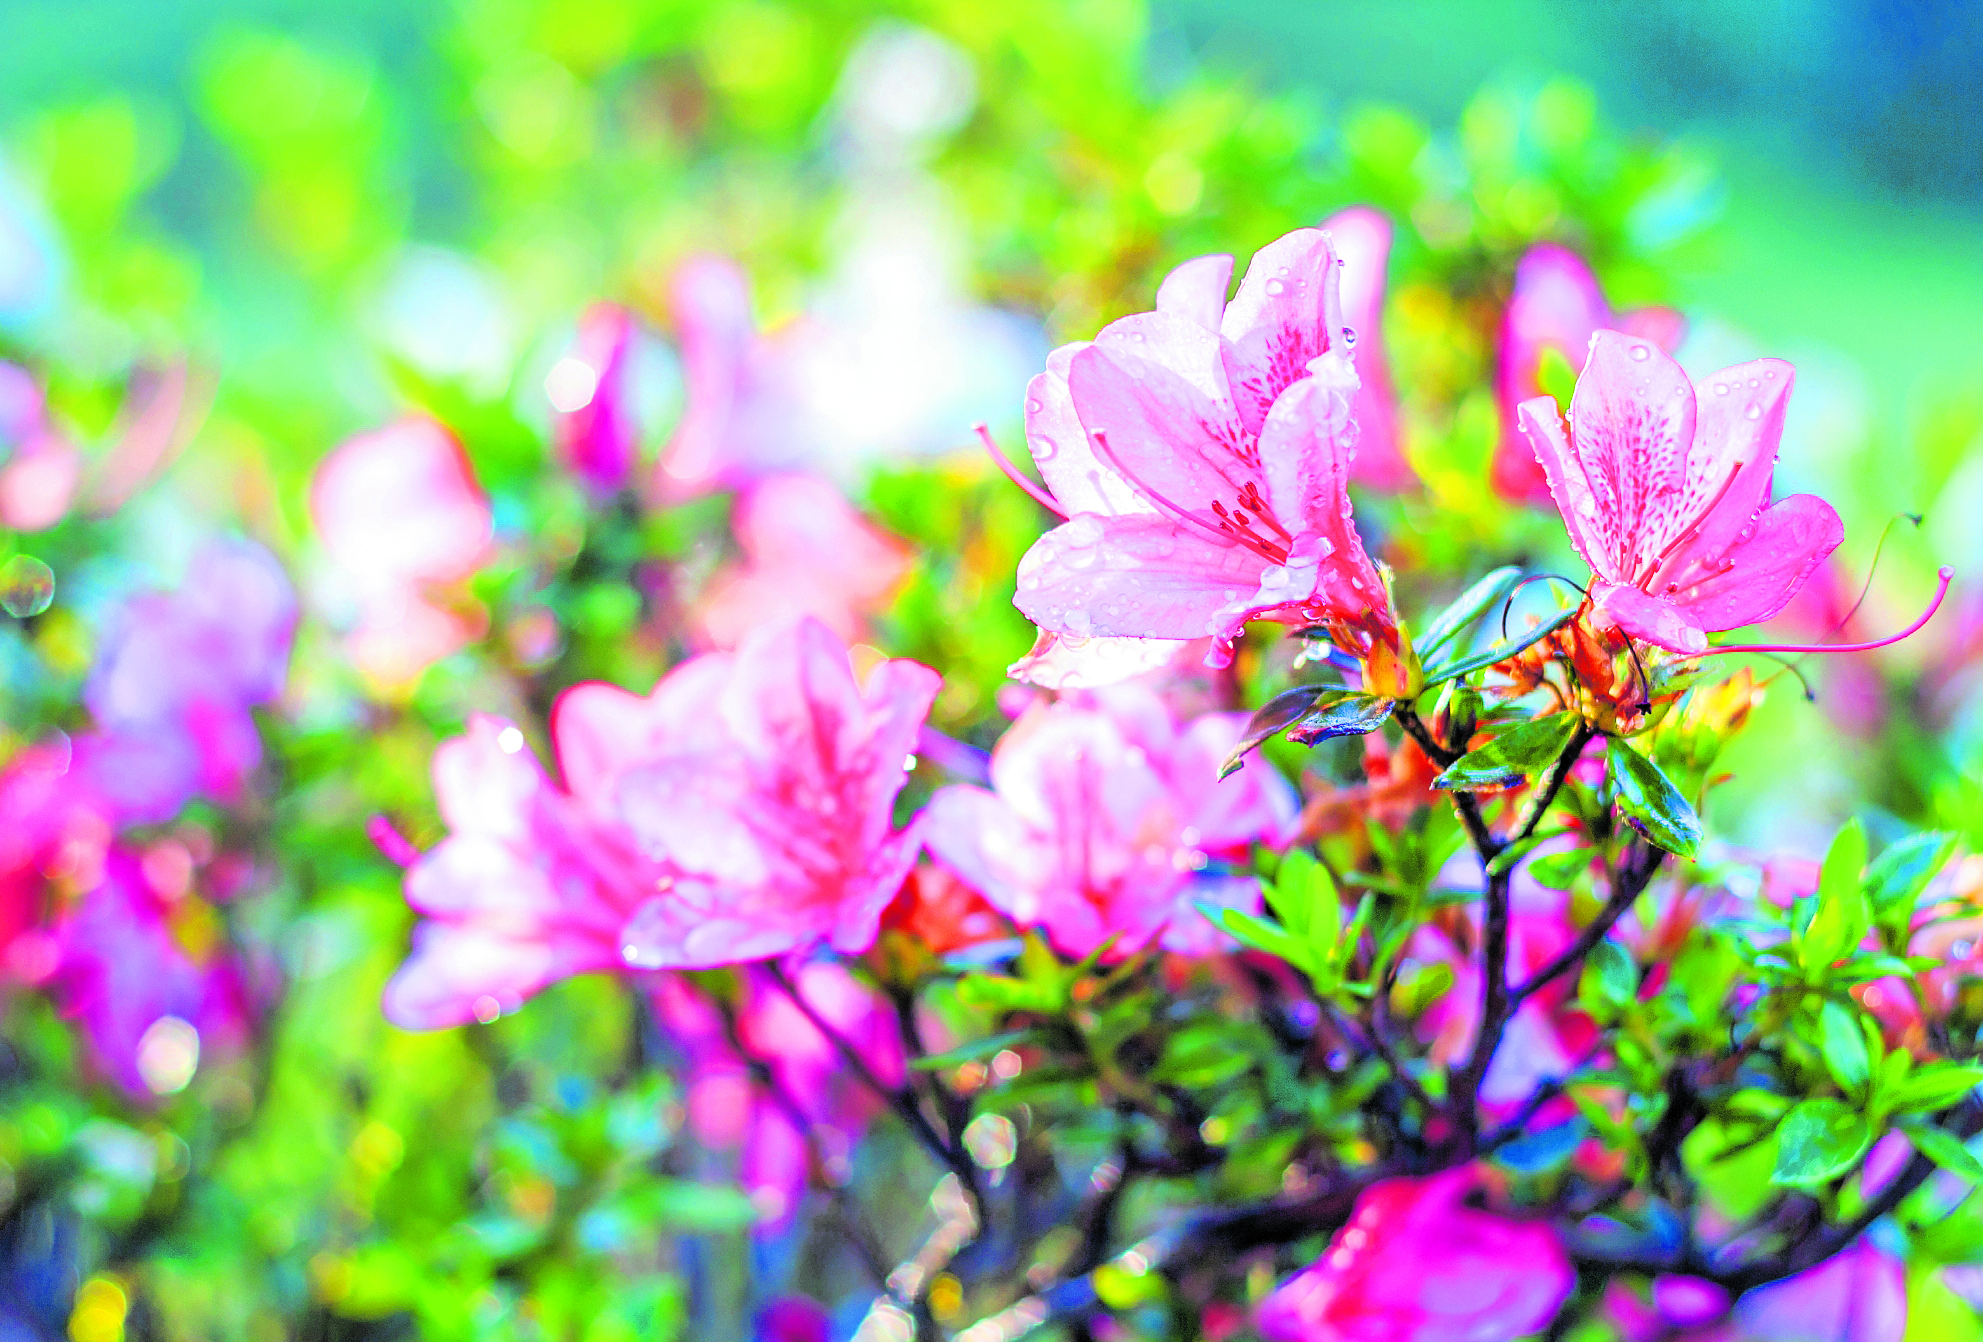 La jardinería también puede ir más allá y ser sostenible.  (Foto Prensa Libre: Shutterstock)